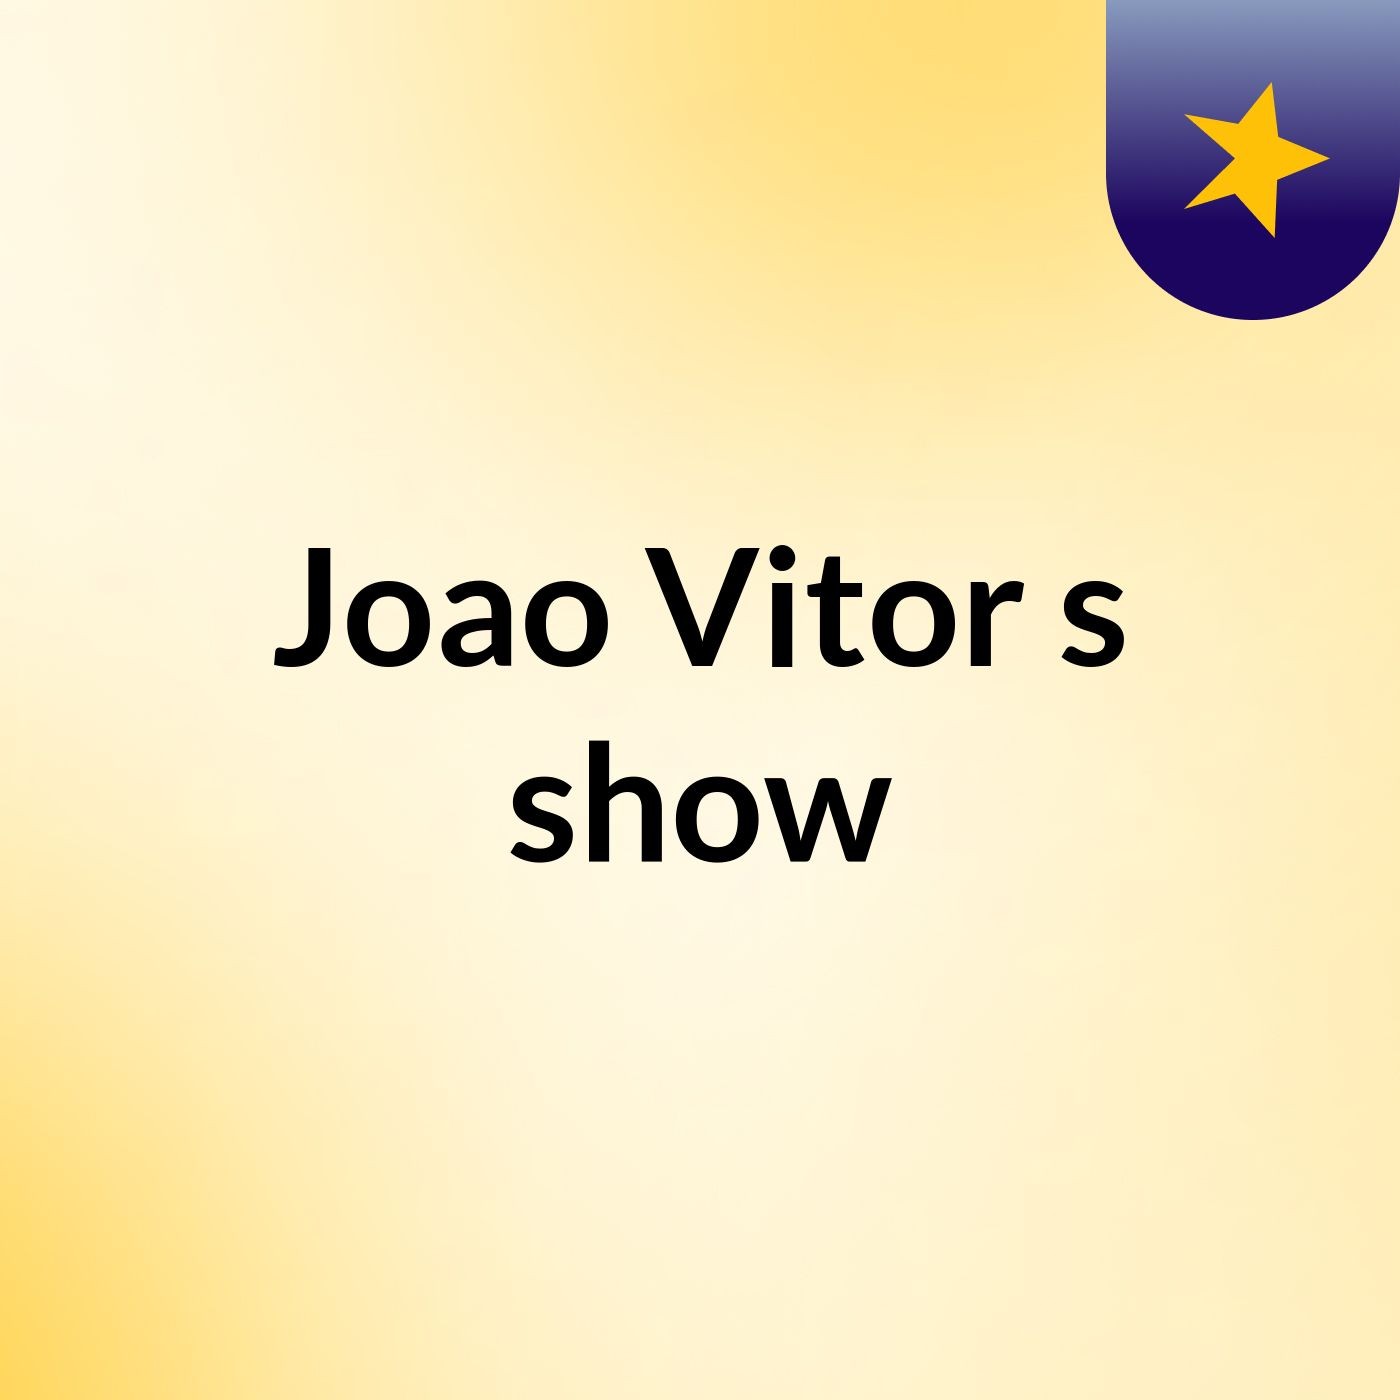 Joao Vitor's show